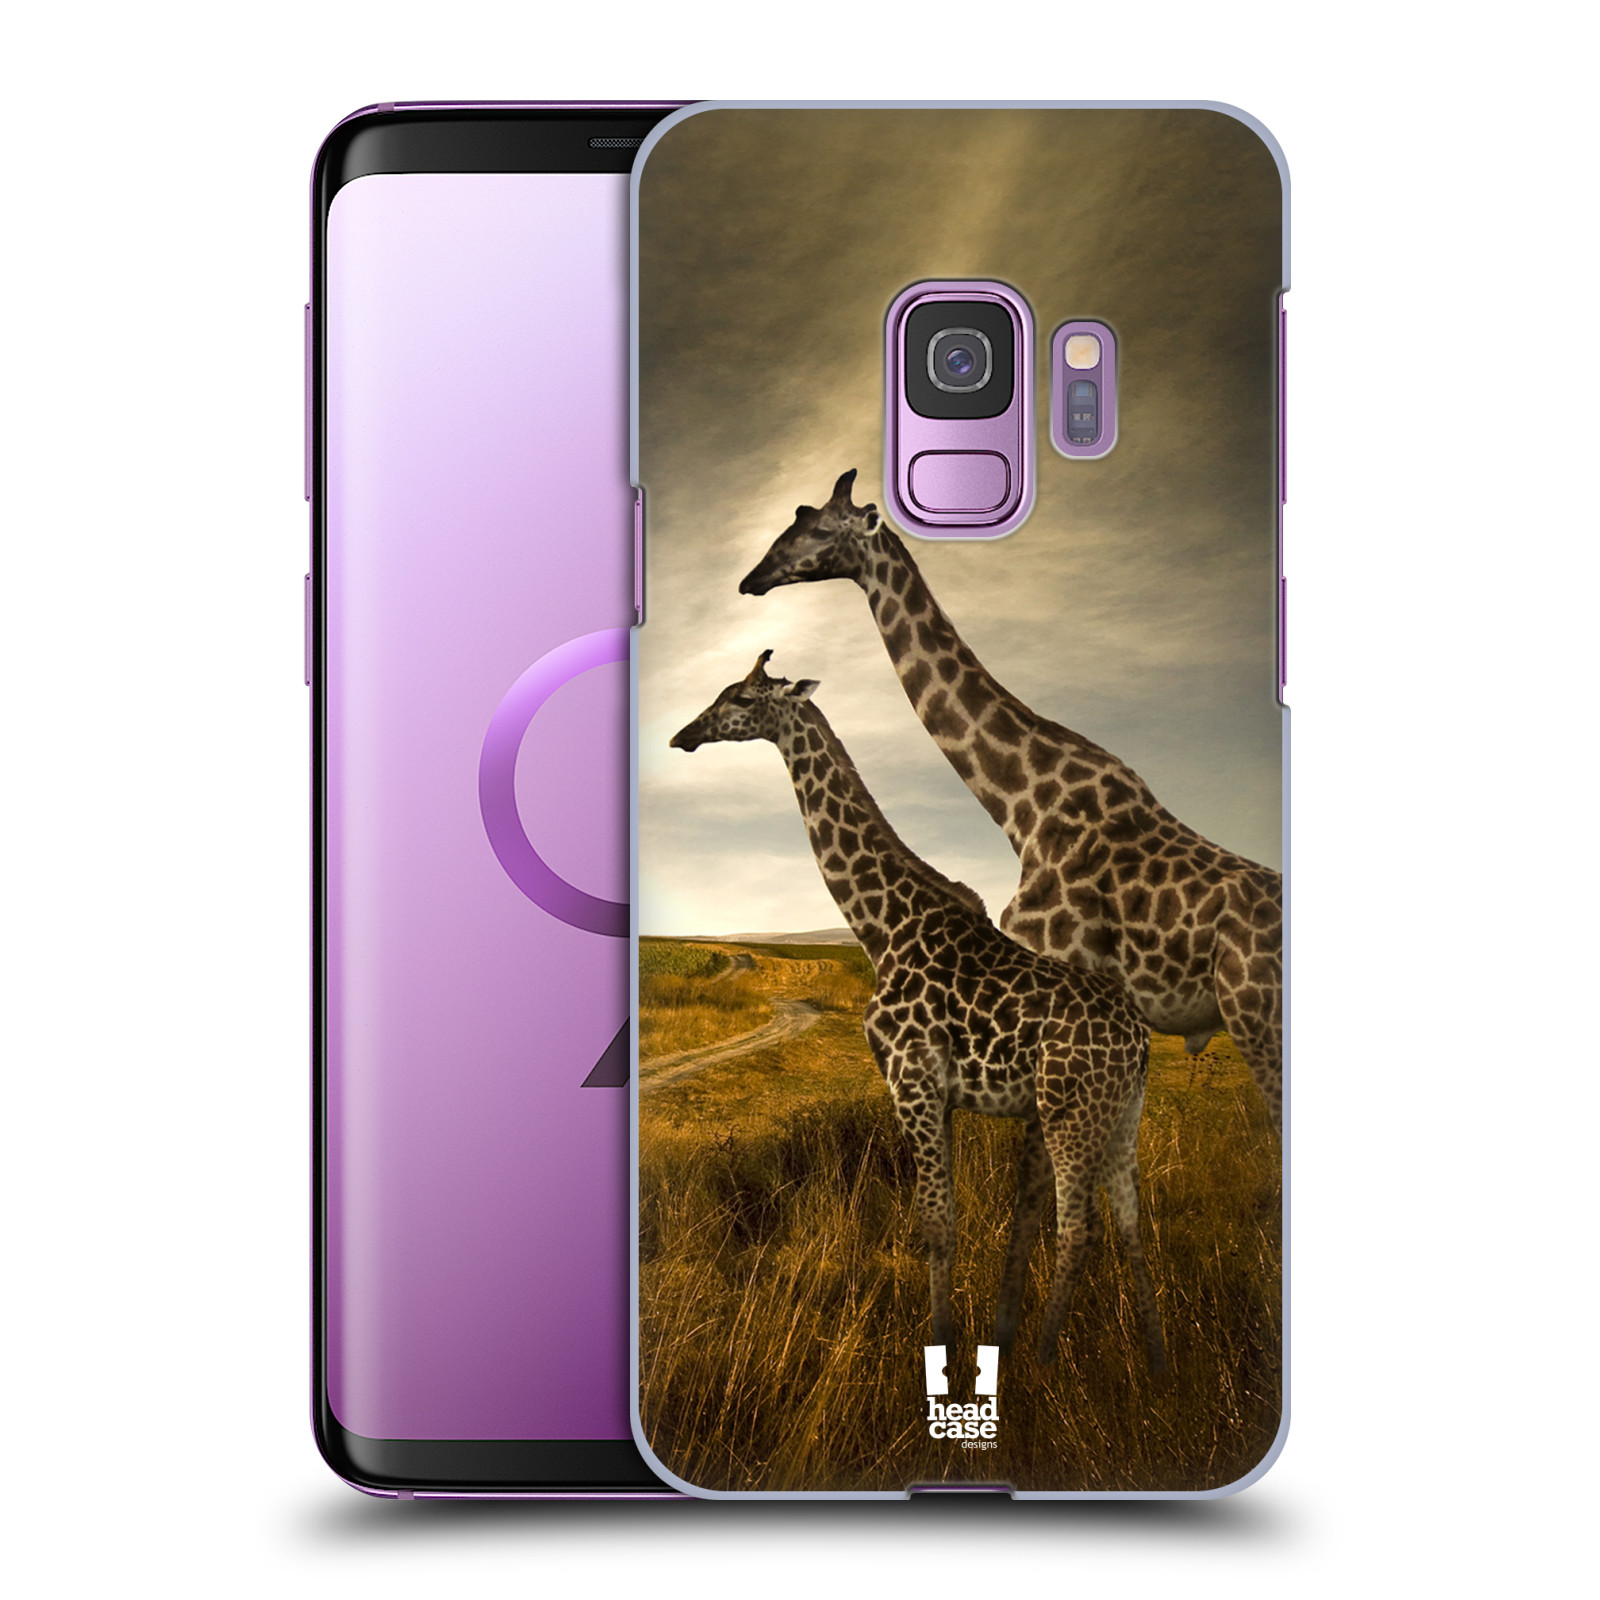 Zadní obal pro mobil Samsung Galaxy S9 - HEAD CASE - Svět zvířat žirafy